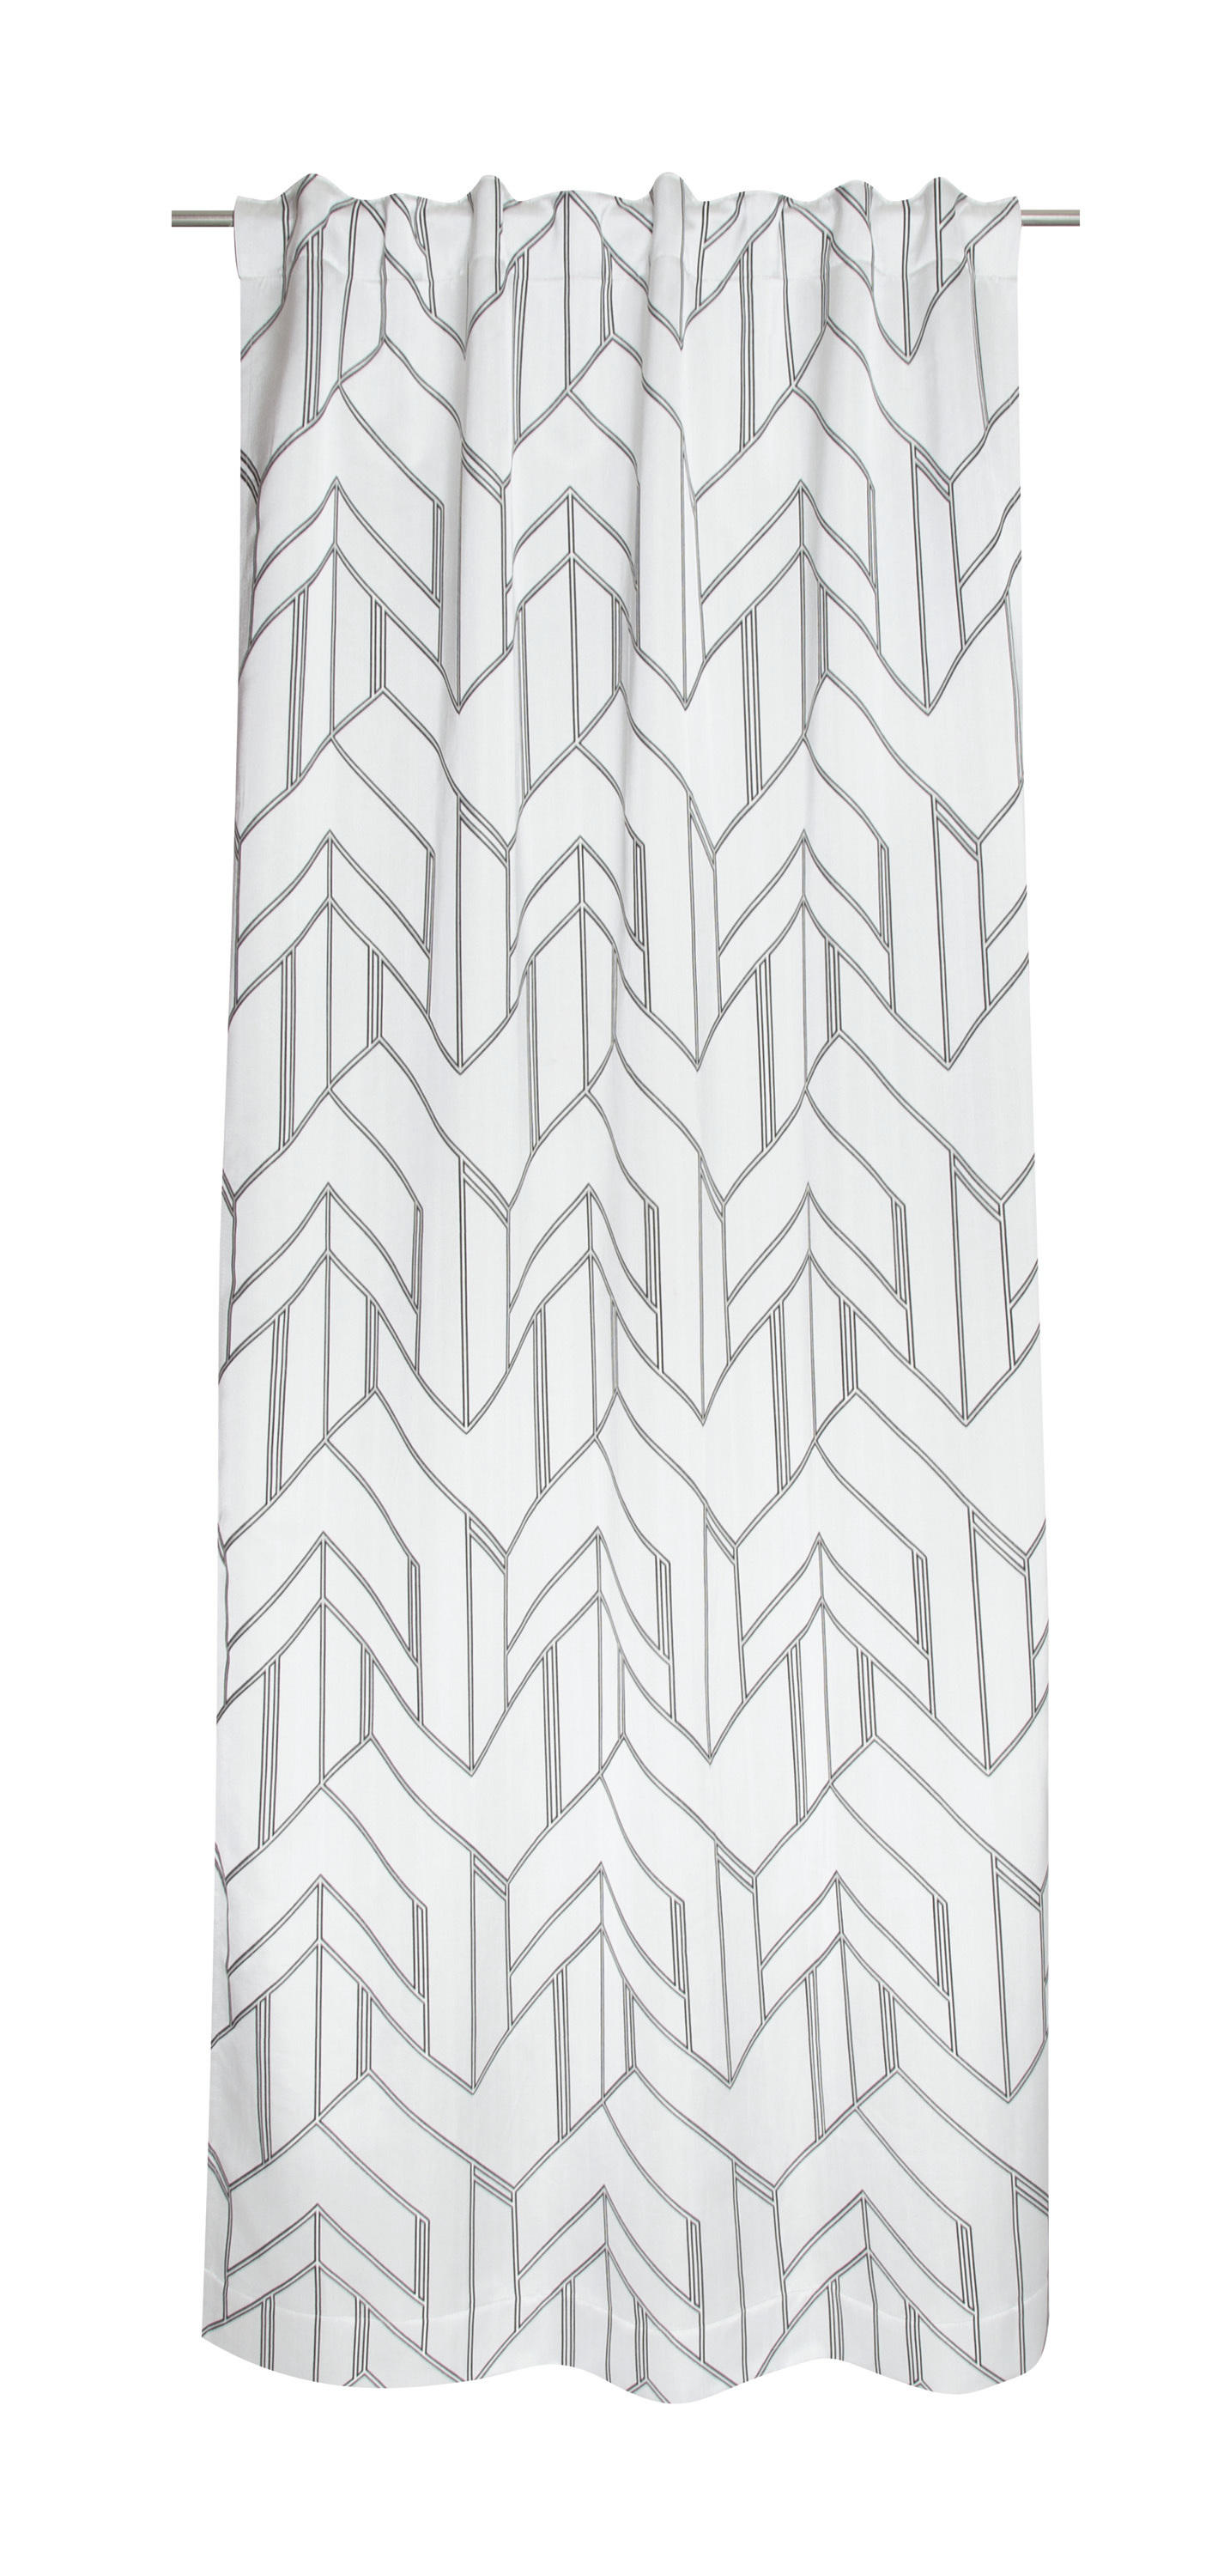 FERTIGVORHANG Elian blickdicht 130/250 cm   - Creme/Grau, Basics, Textil (130/250cm) - Schöner Wohnen